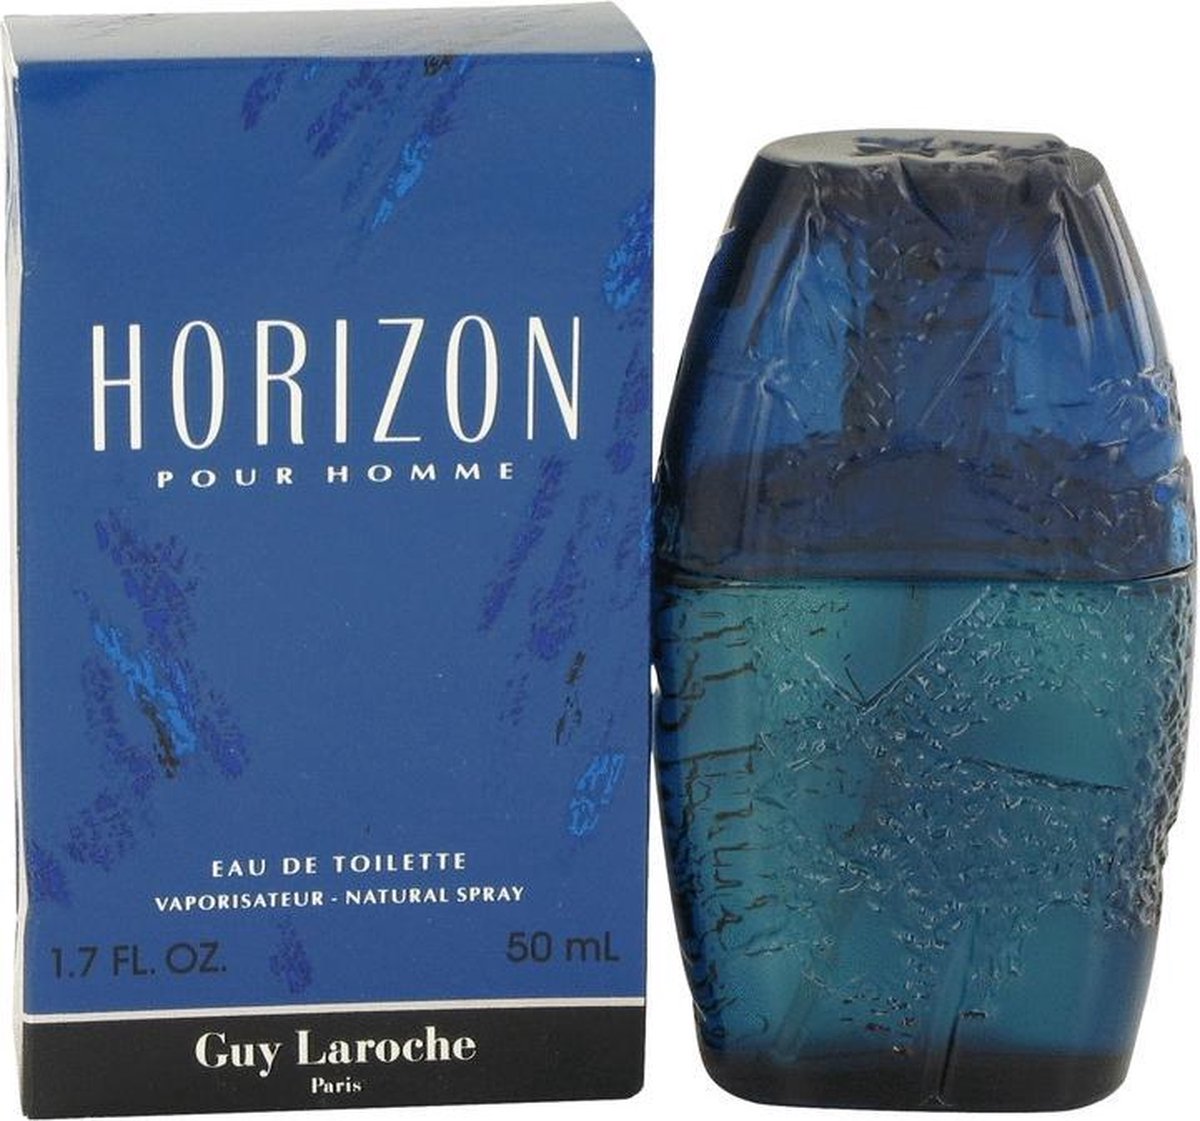 HORIZON by Guy Laroche 50 ml - Eau De Toilette Spray